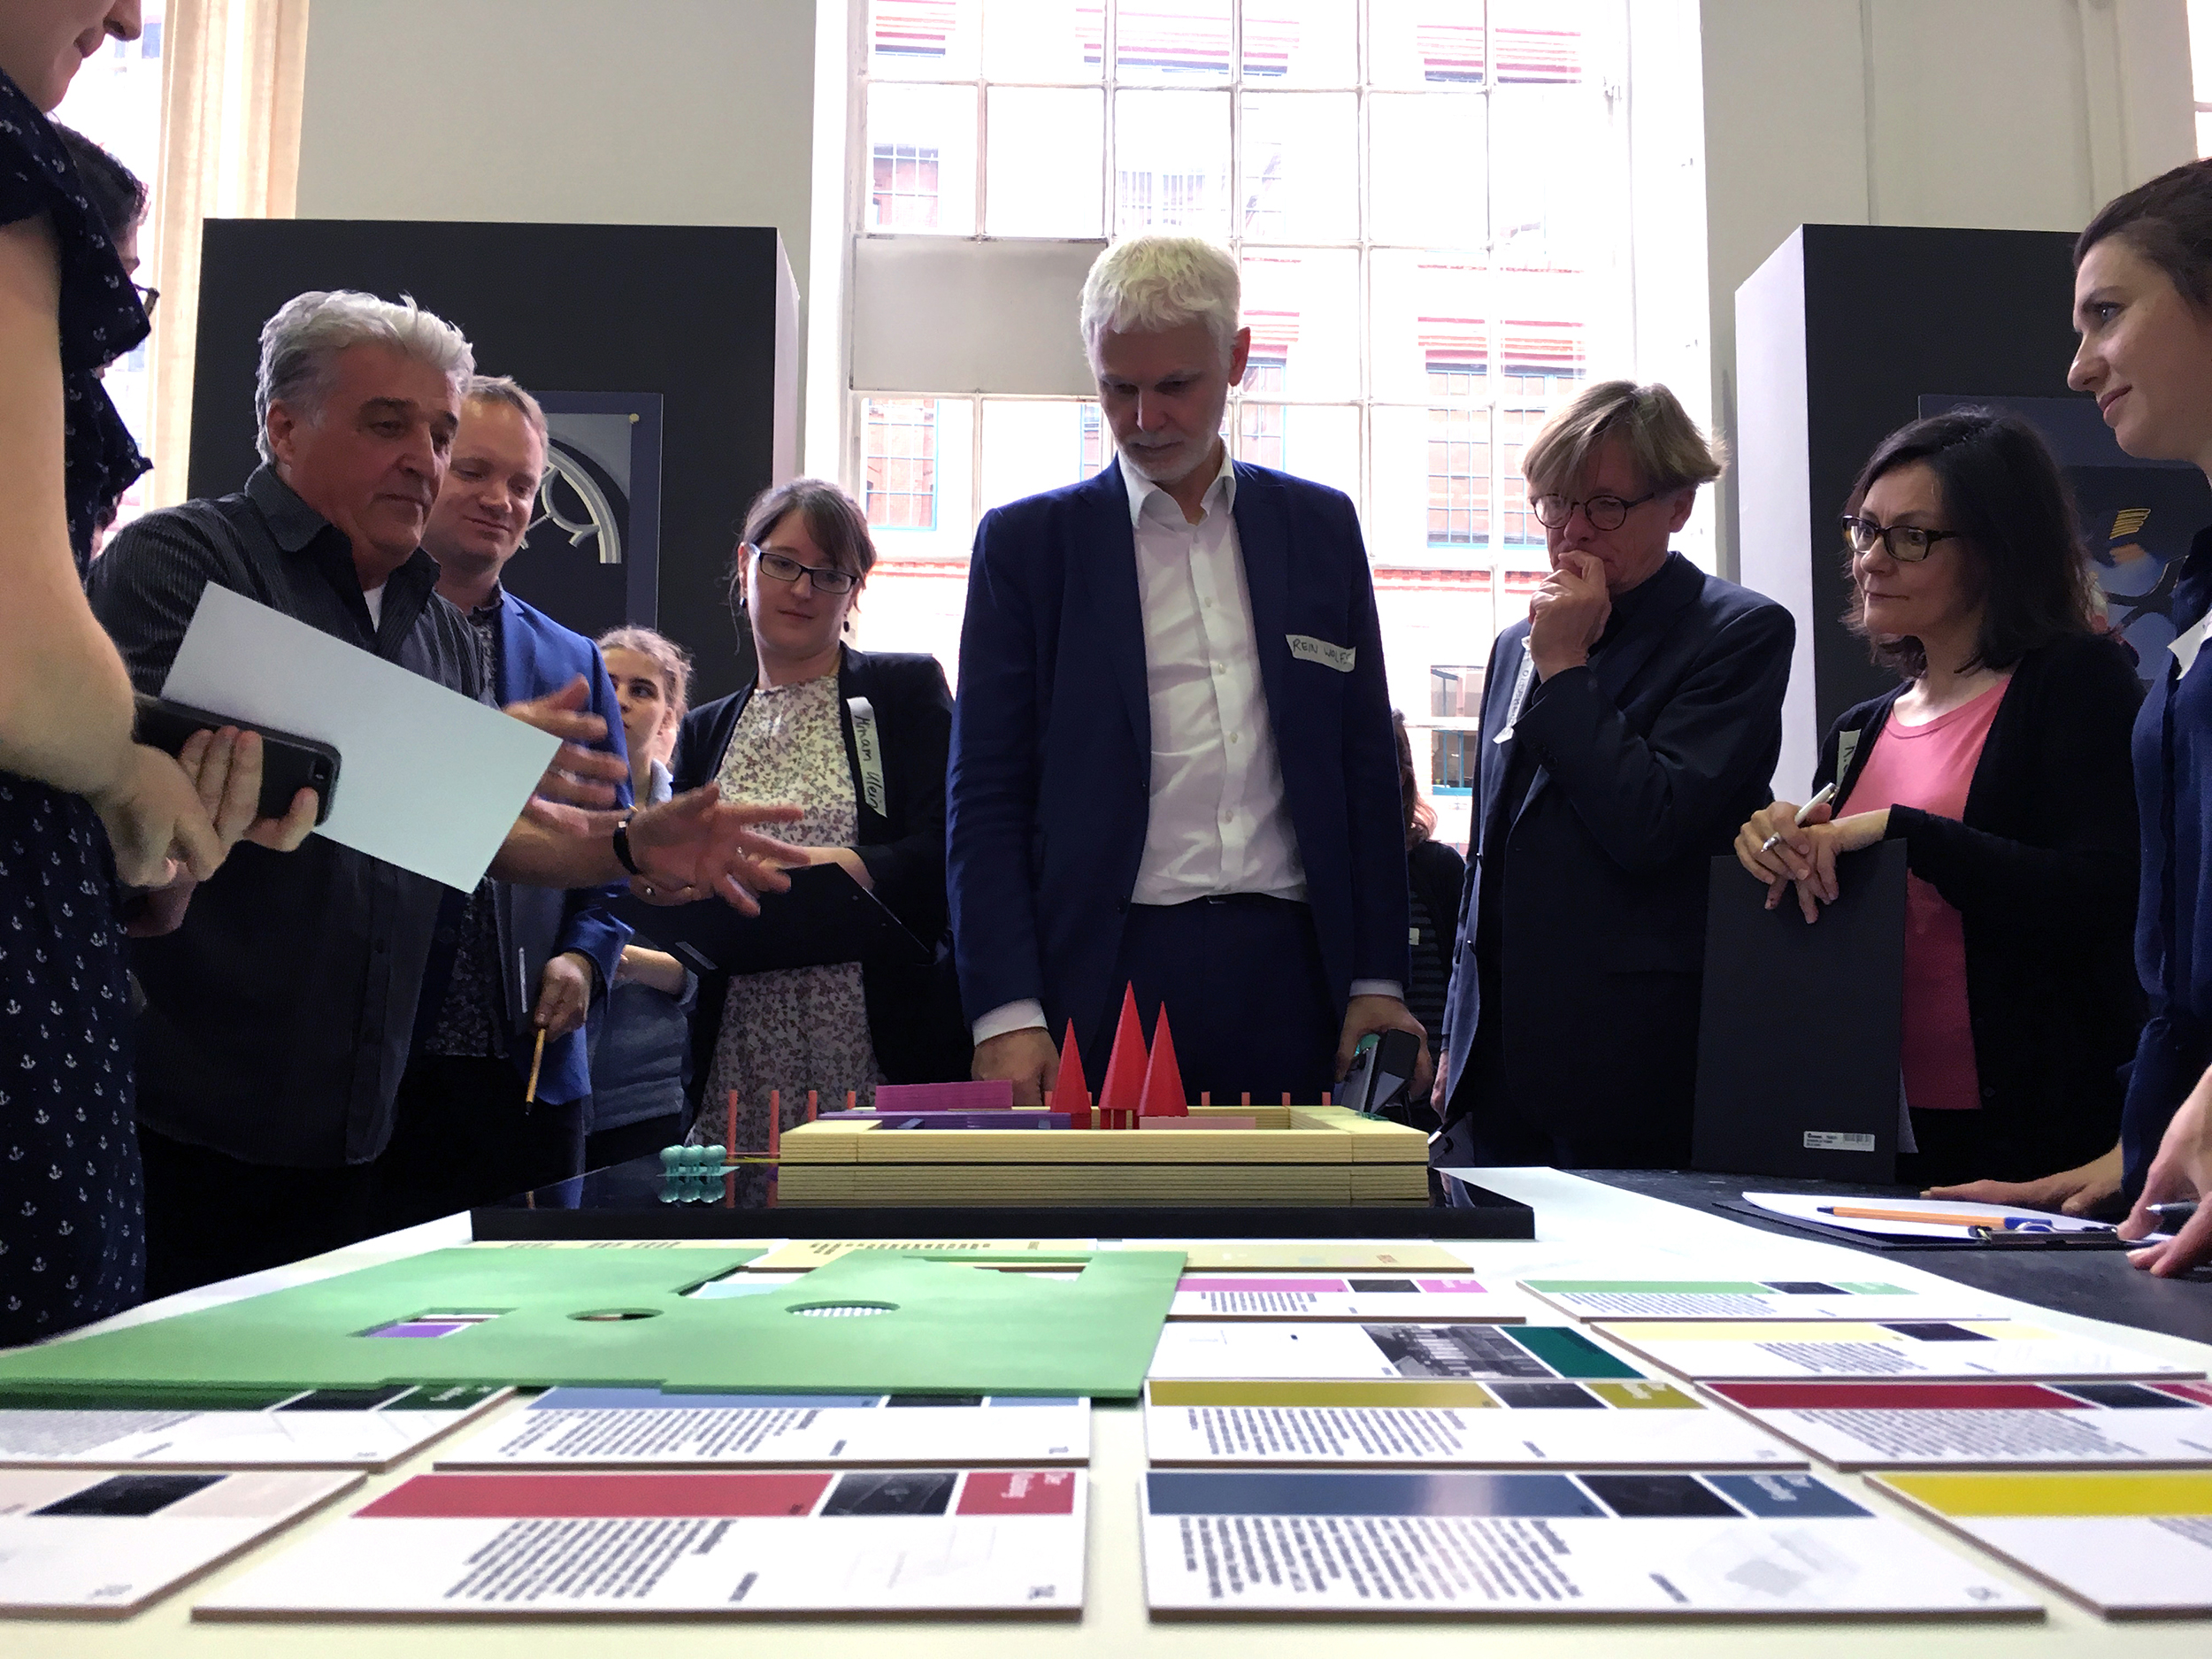 Foto: Werkstattgespräch in Berlin mit dem Team der Bundeskunsthalle, dem Team Modell+Design und Studierende